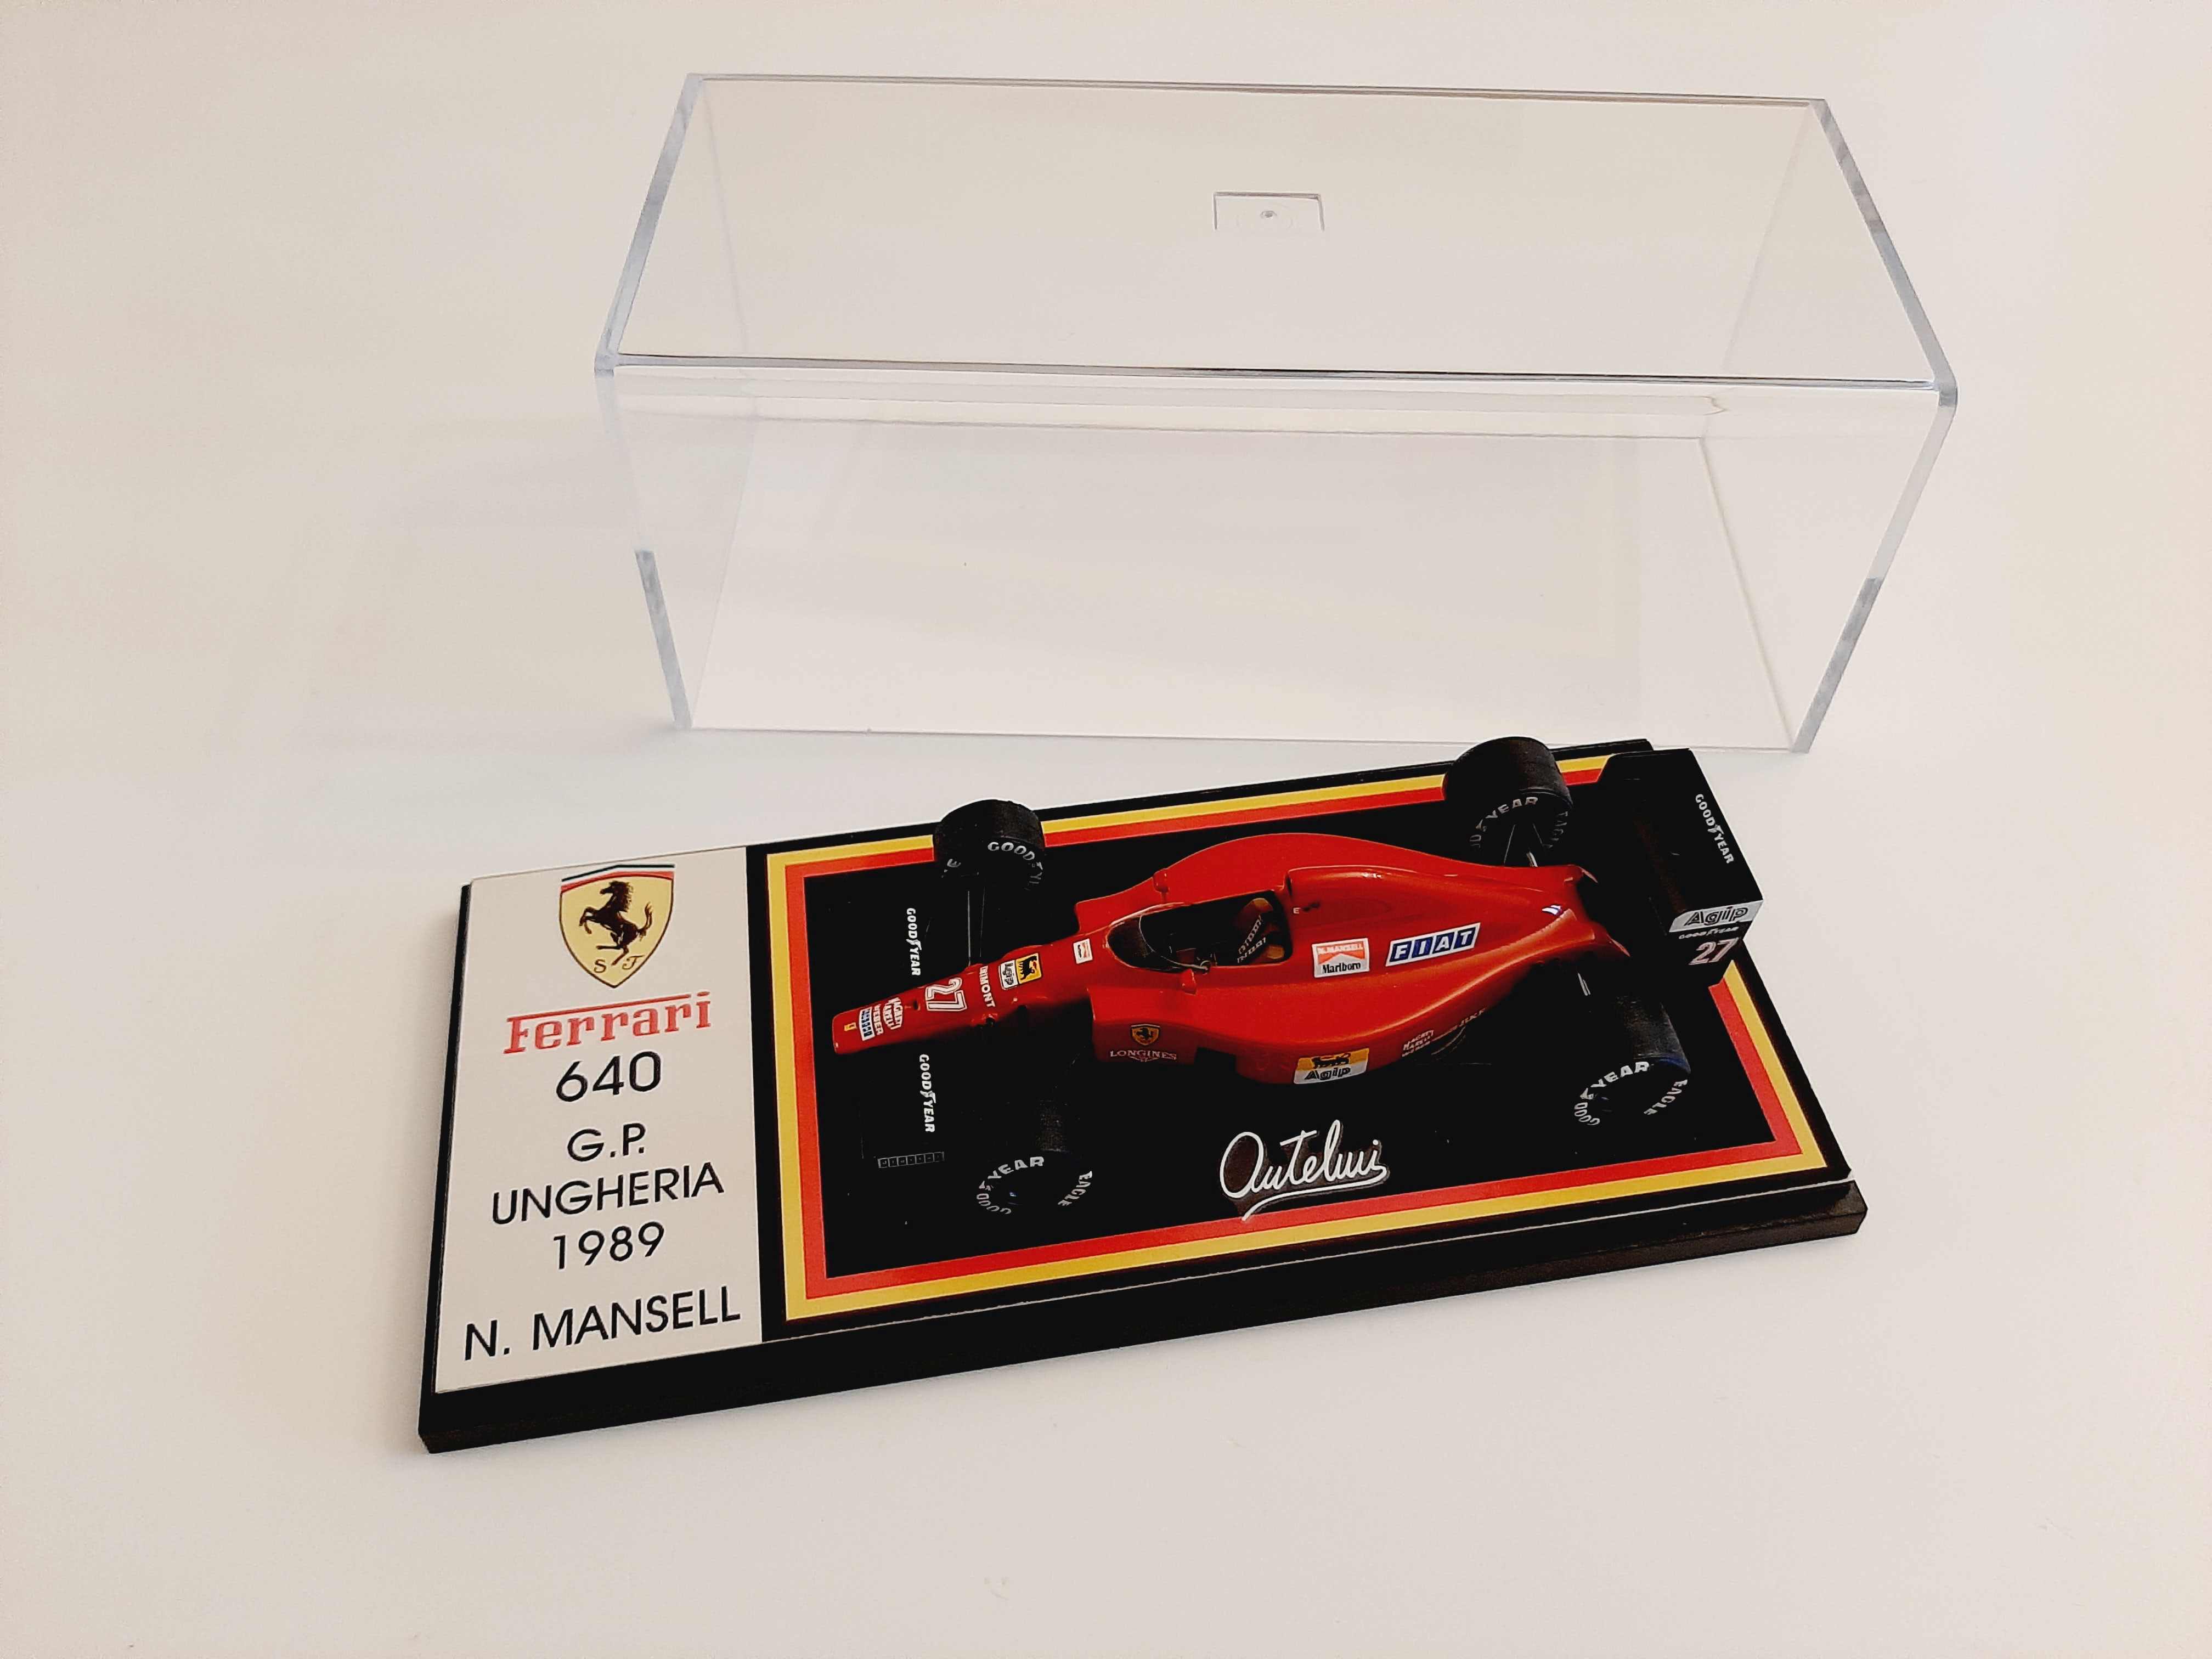 F. Suber : Ferrari 640 F1 Winner Hungary GP 1989